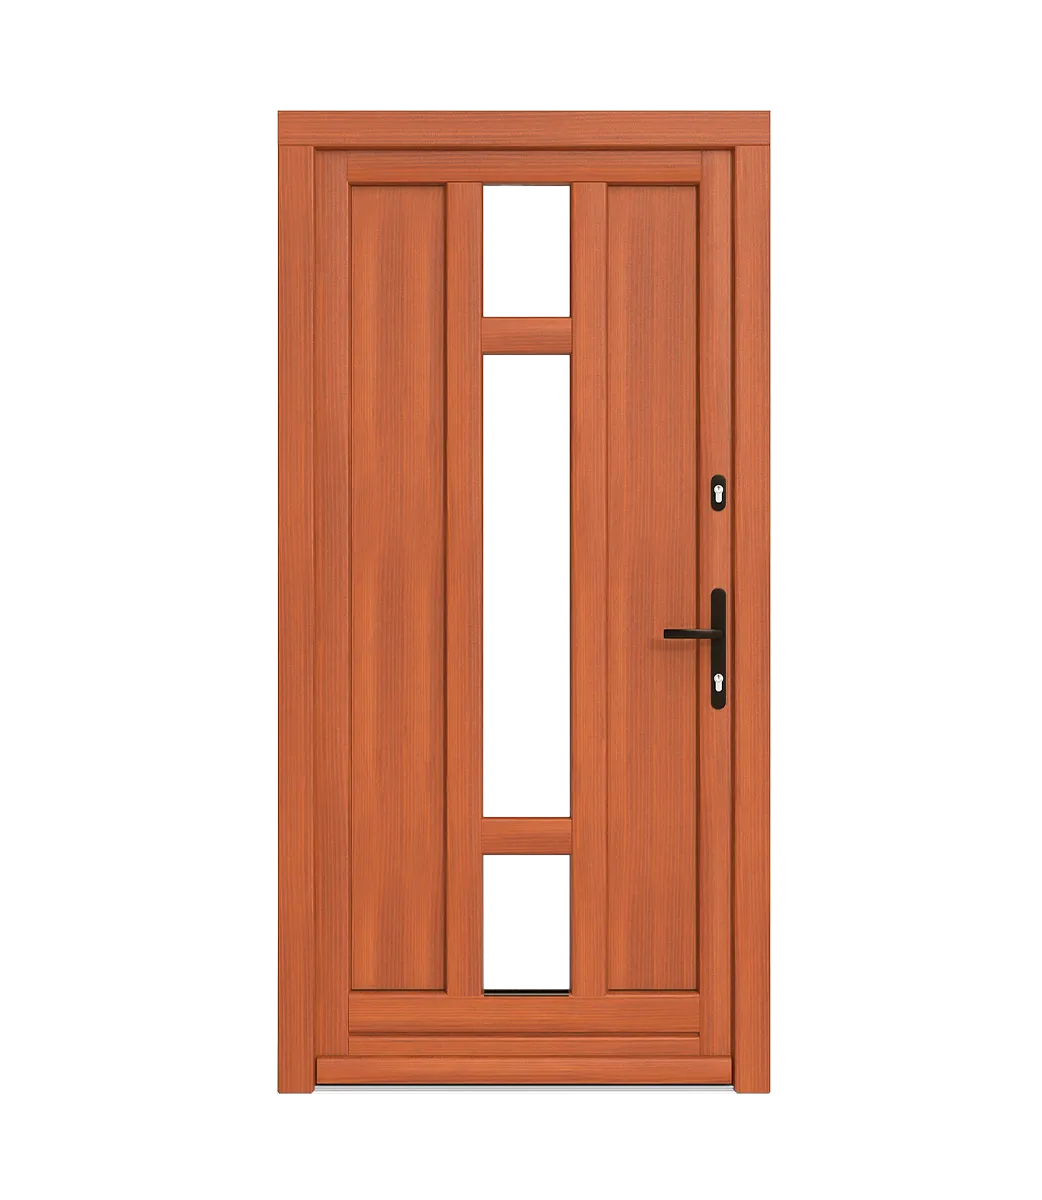 Latě v dřevěných dveřích